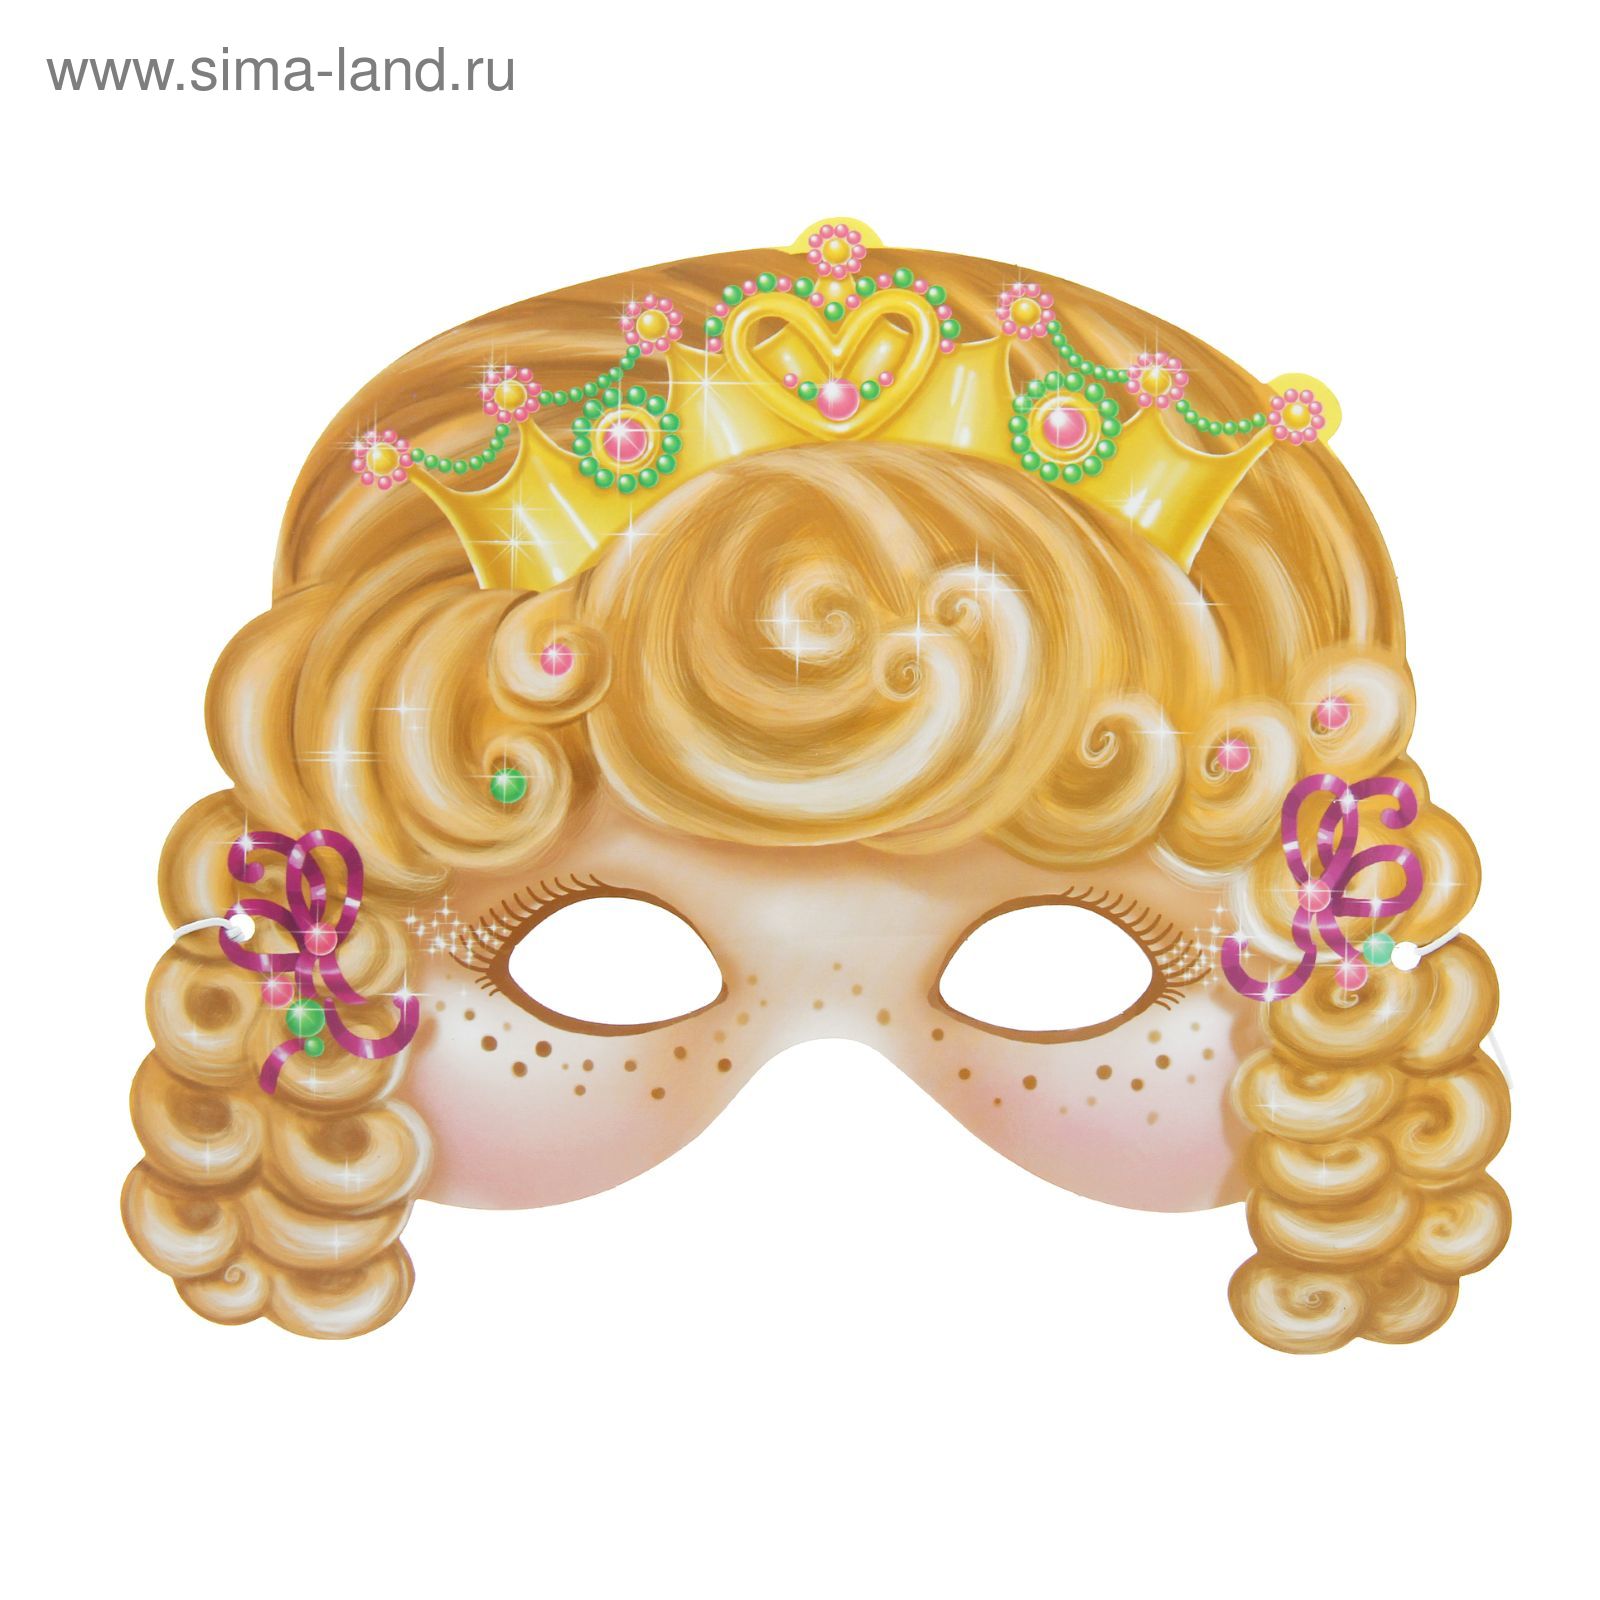 Карнавальная маска Принцессы Белоснежка Disney